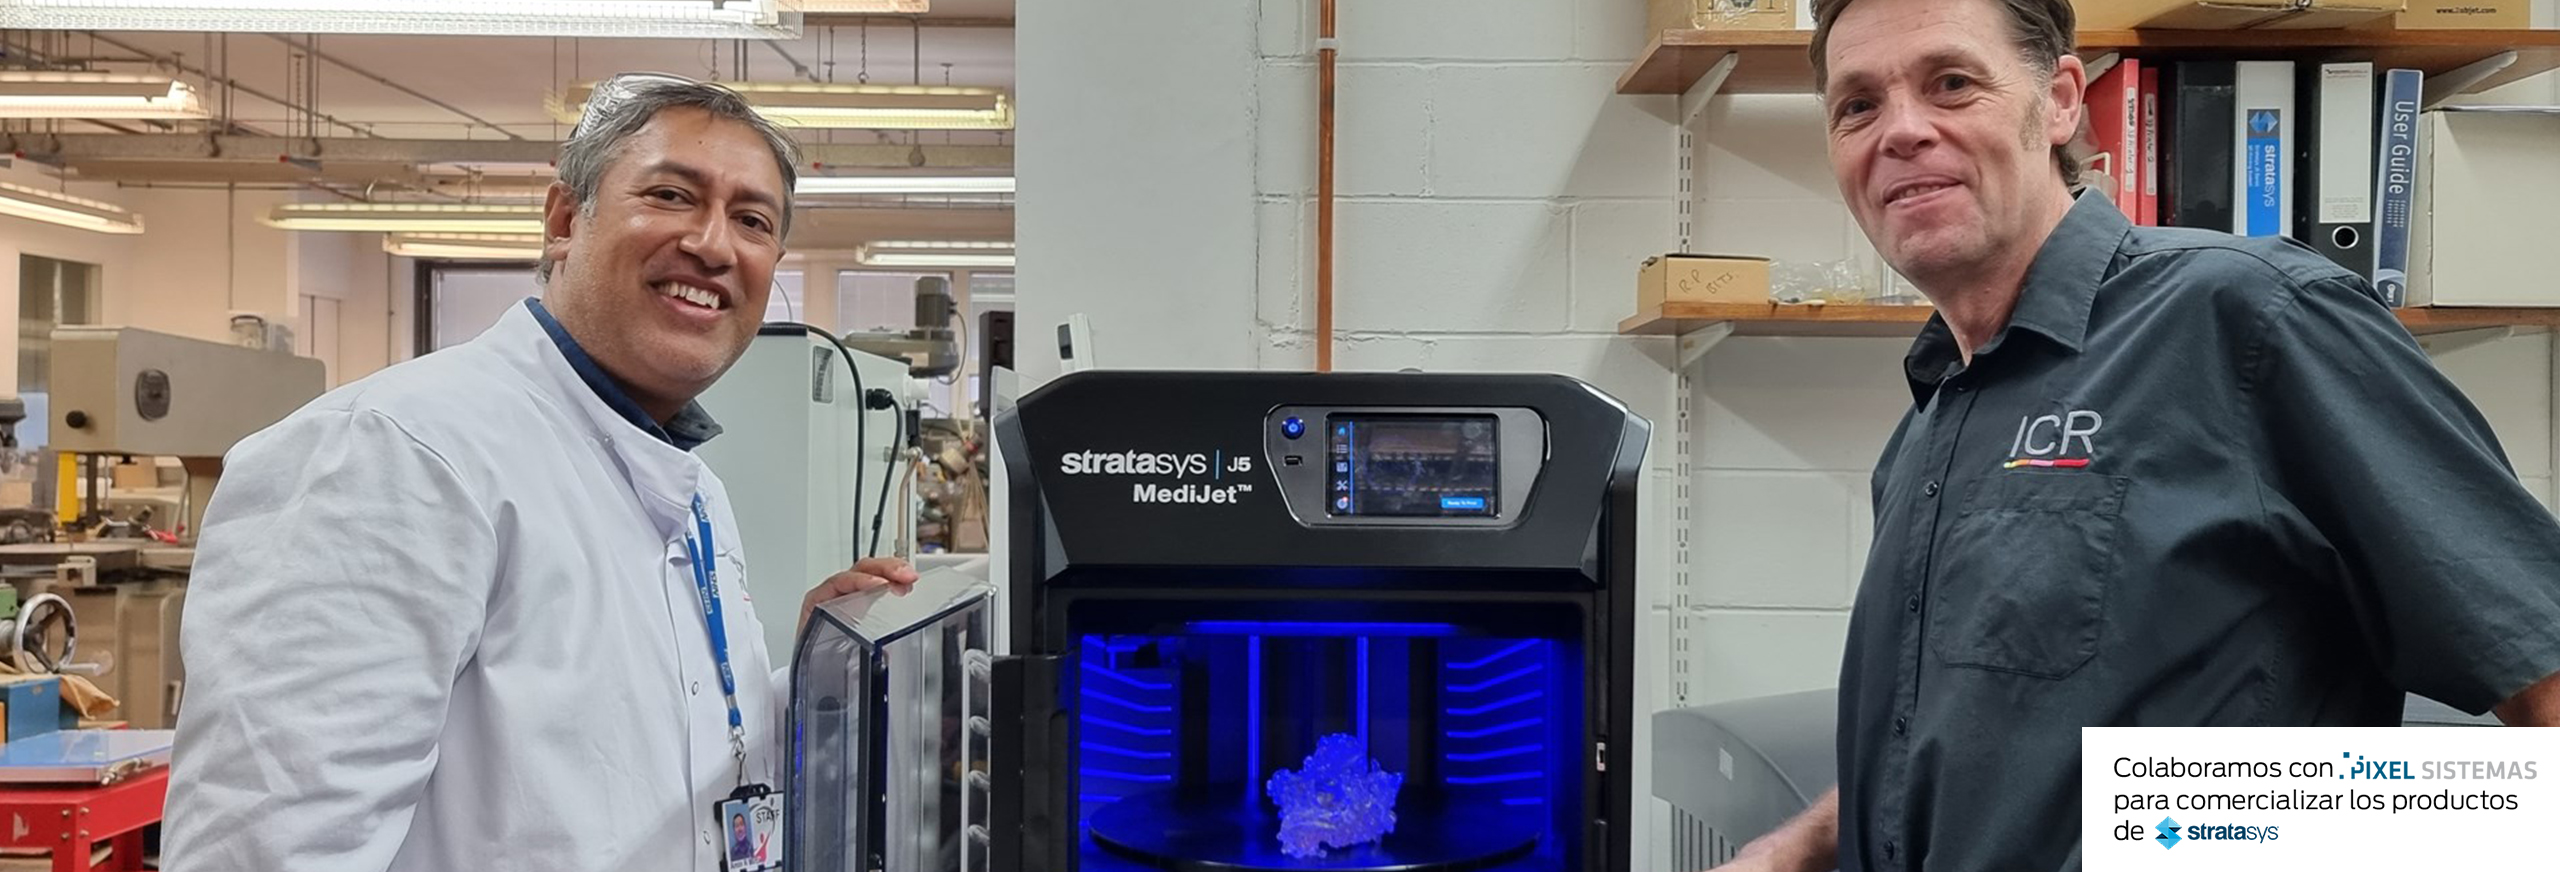 El Instituto de Investigación del Cáncer del Reino Unido utiliza la impresora 3D Stratasys J5 MediJet contra el cáncer